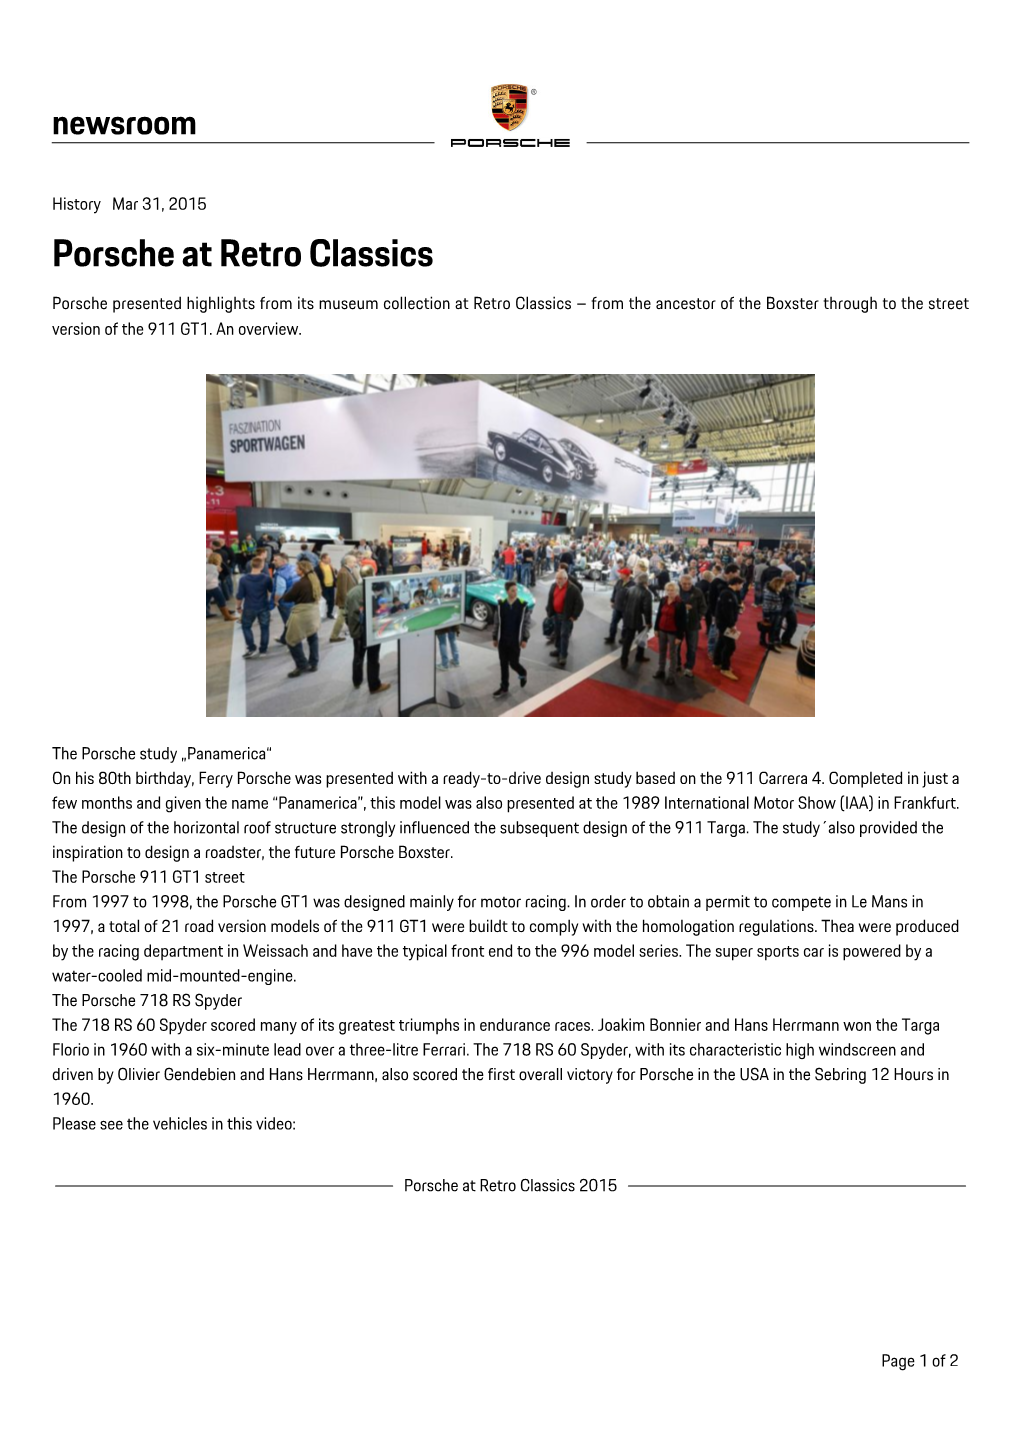 Porsche at Retro Classics